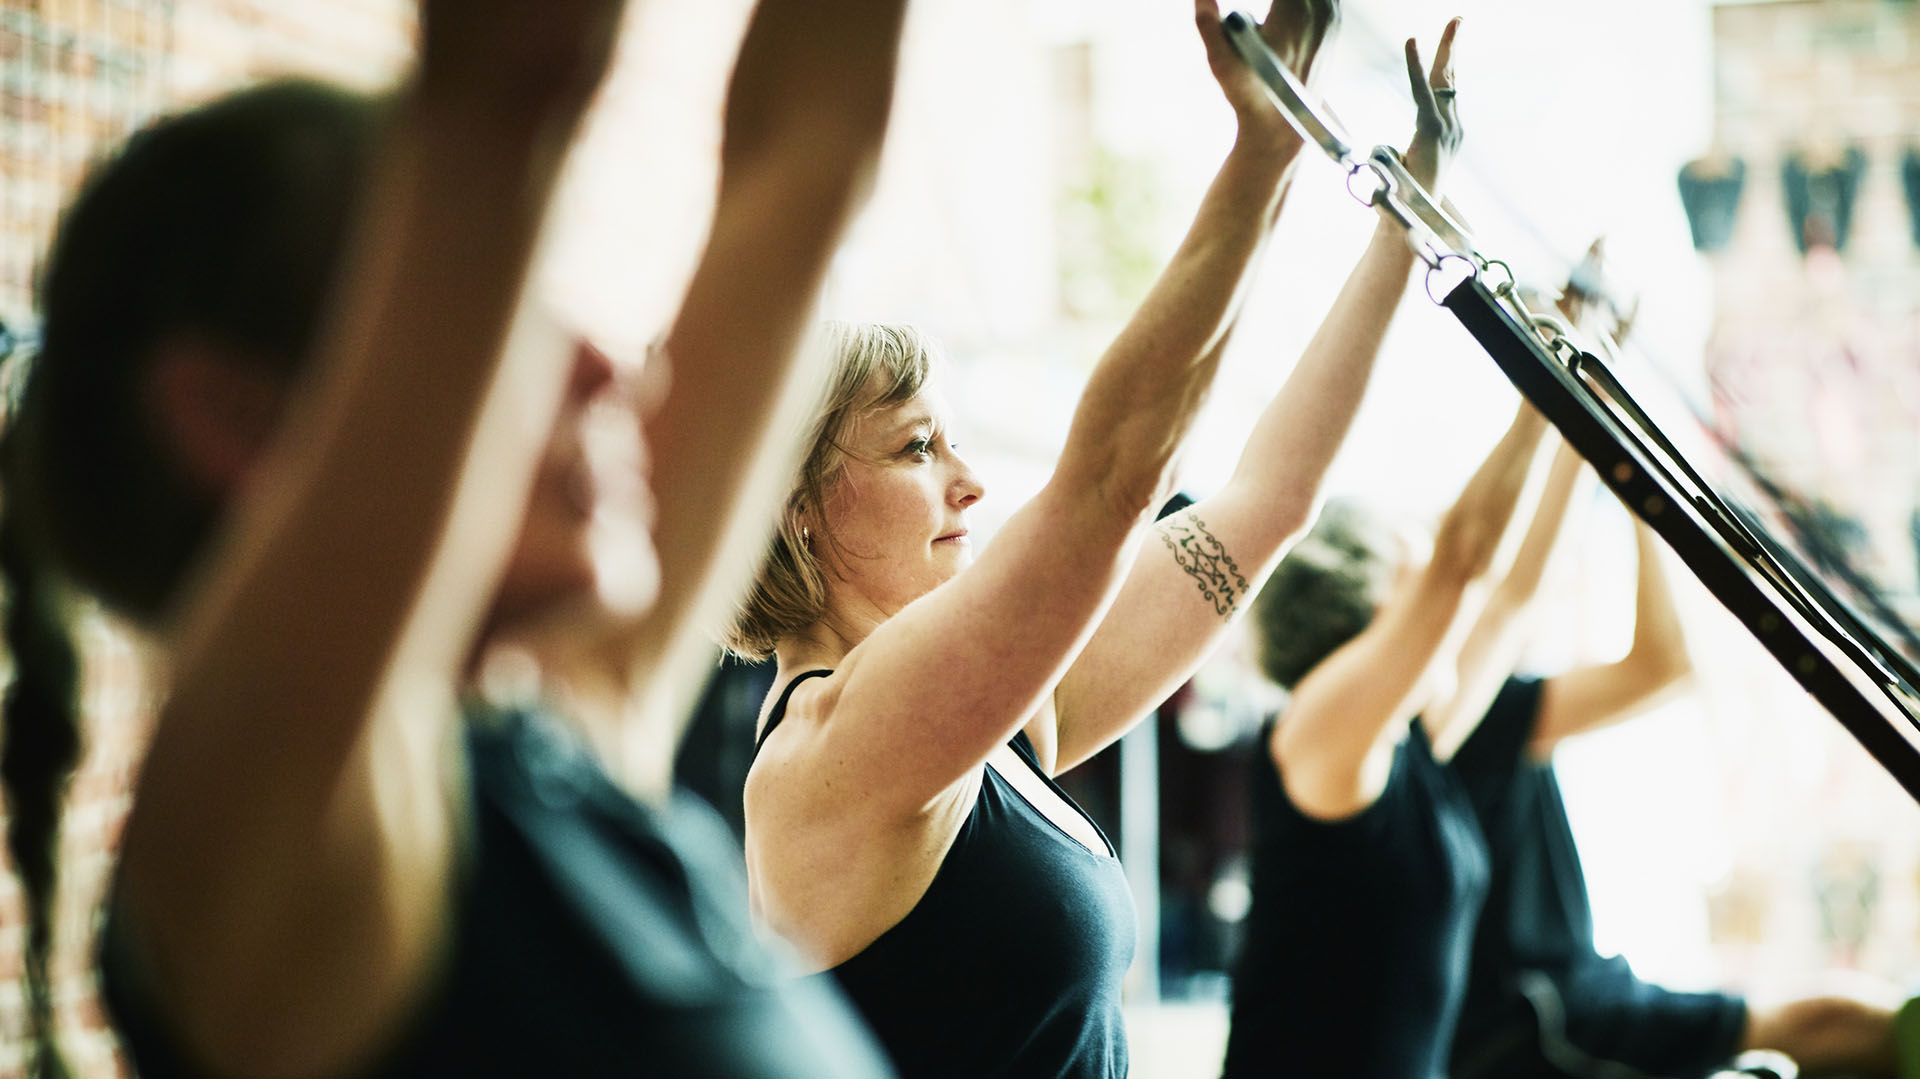 La OMS recomienda realizar 150 minutos de actividad física a la semana para gozar de buena salud (Getty Images)